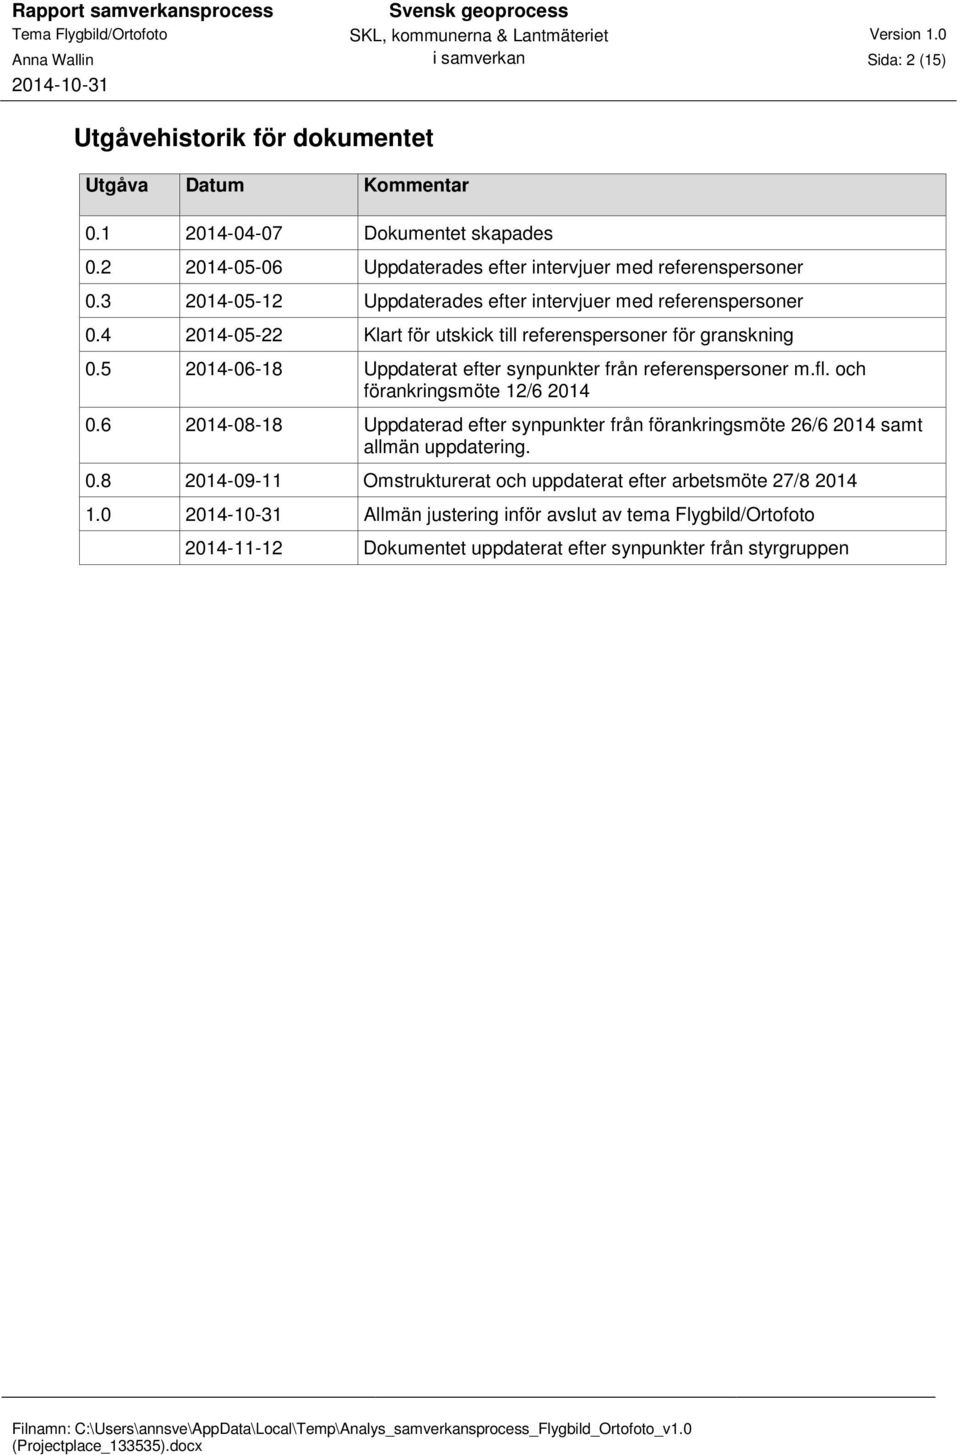 4 2014-05-22 Klart för utskick till referenspersoner för granskning 0.5 2014-06-18 Uppdaterat efter synpunkter från referenspersoner m.fl. och förankringsmöte 12/6 2014 0.